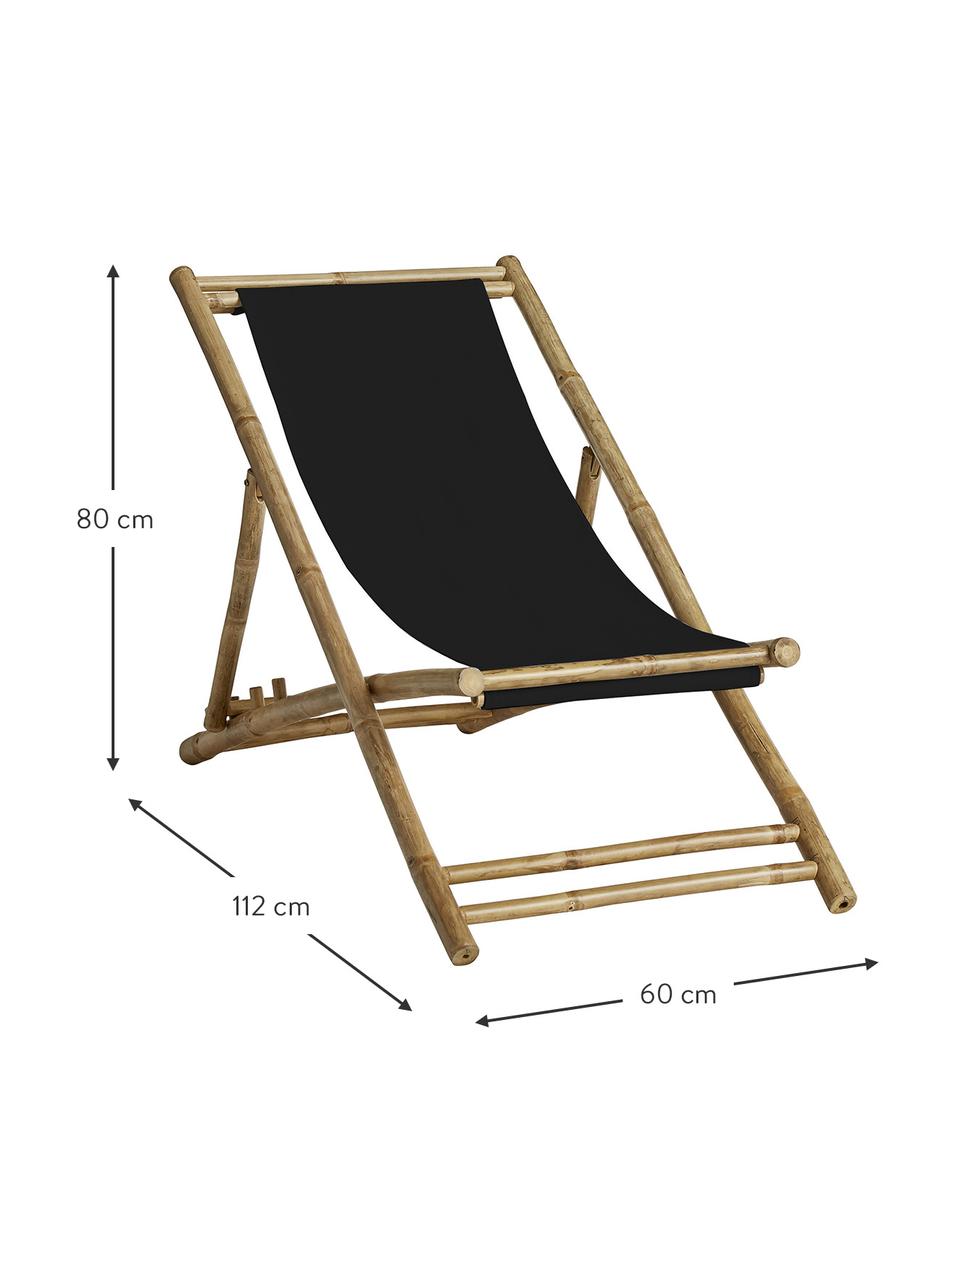 Leżak składany z drewna bambusowego Mandisa, Stelaż: drewno bambusowe, Tapicerka: płótno żaglowe, Czarny, jasny brązowy, S 112 x G 60 cm